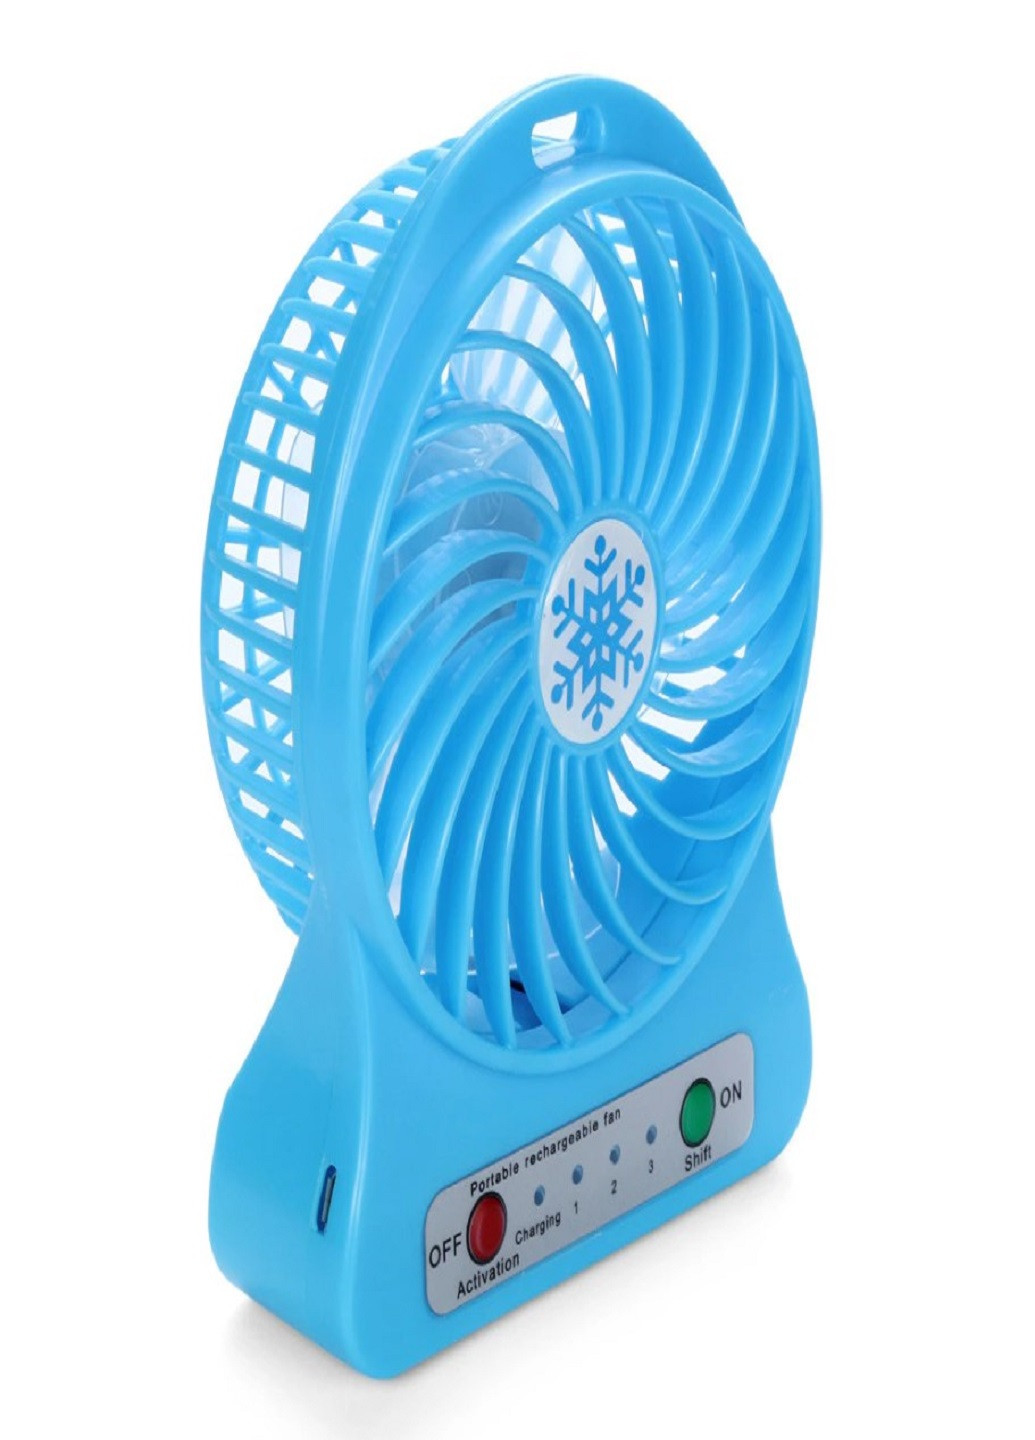 Универсальный портативный ручной вентилятор с аккумулятором настольный Mini Fan Синий VTech (258965651)